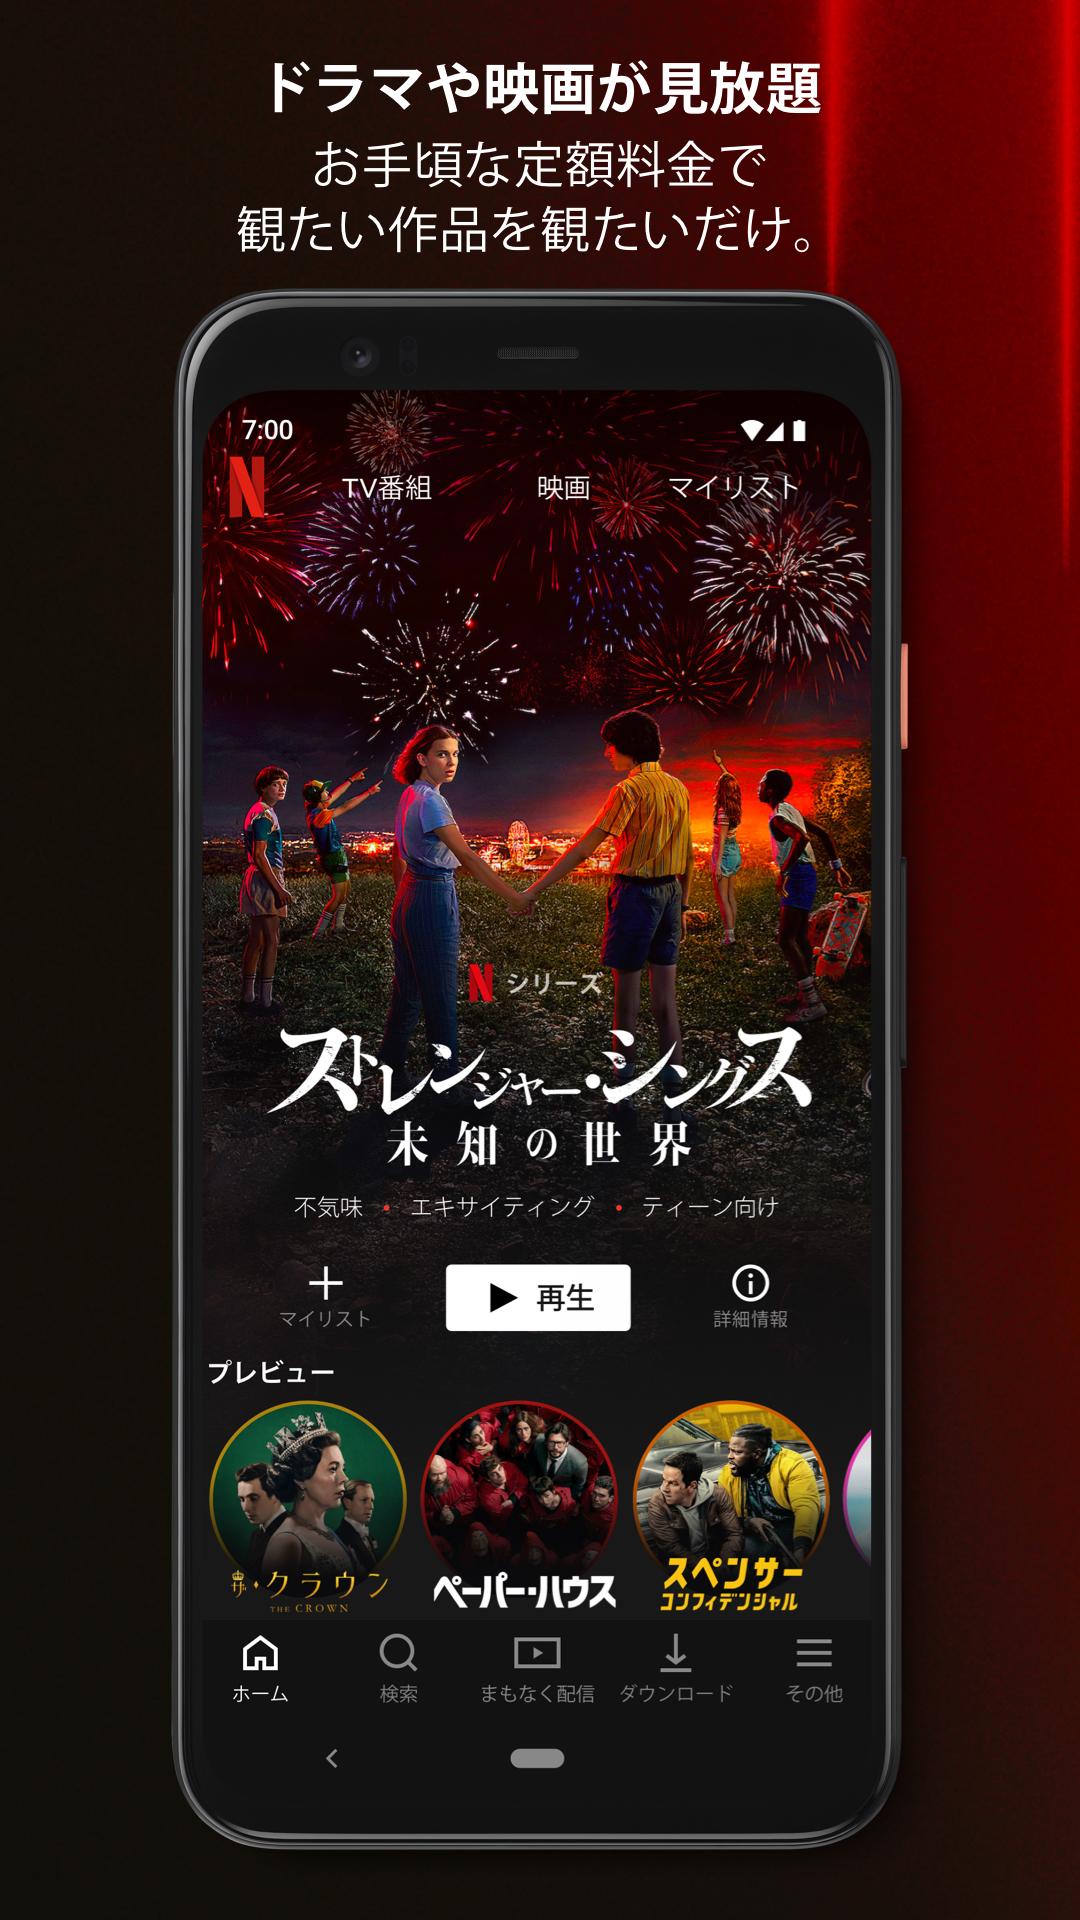 無料で Netflix アプリの最新版 Apk7 68 4 Build 38 をダウンロードー Android用 Netflix Apk の最新バージョンをダウンロード Apkfab Com Jp